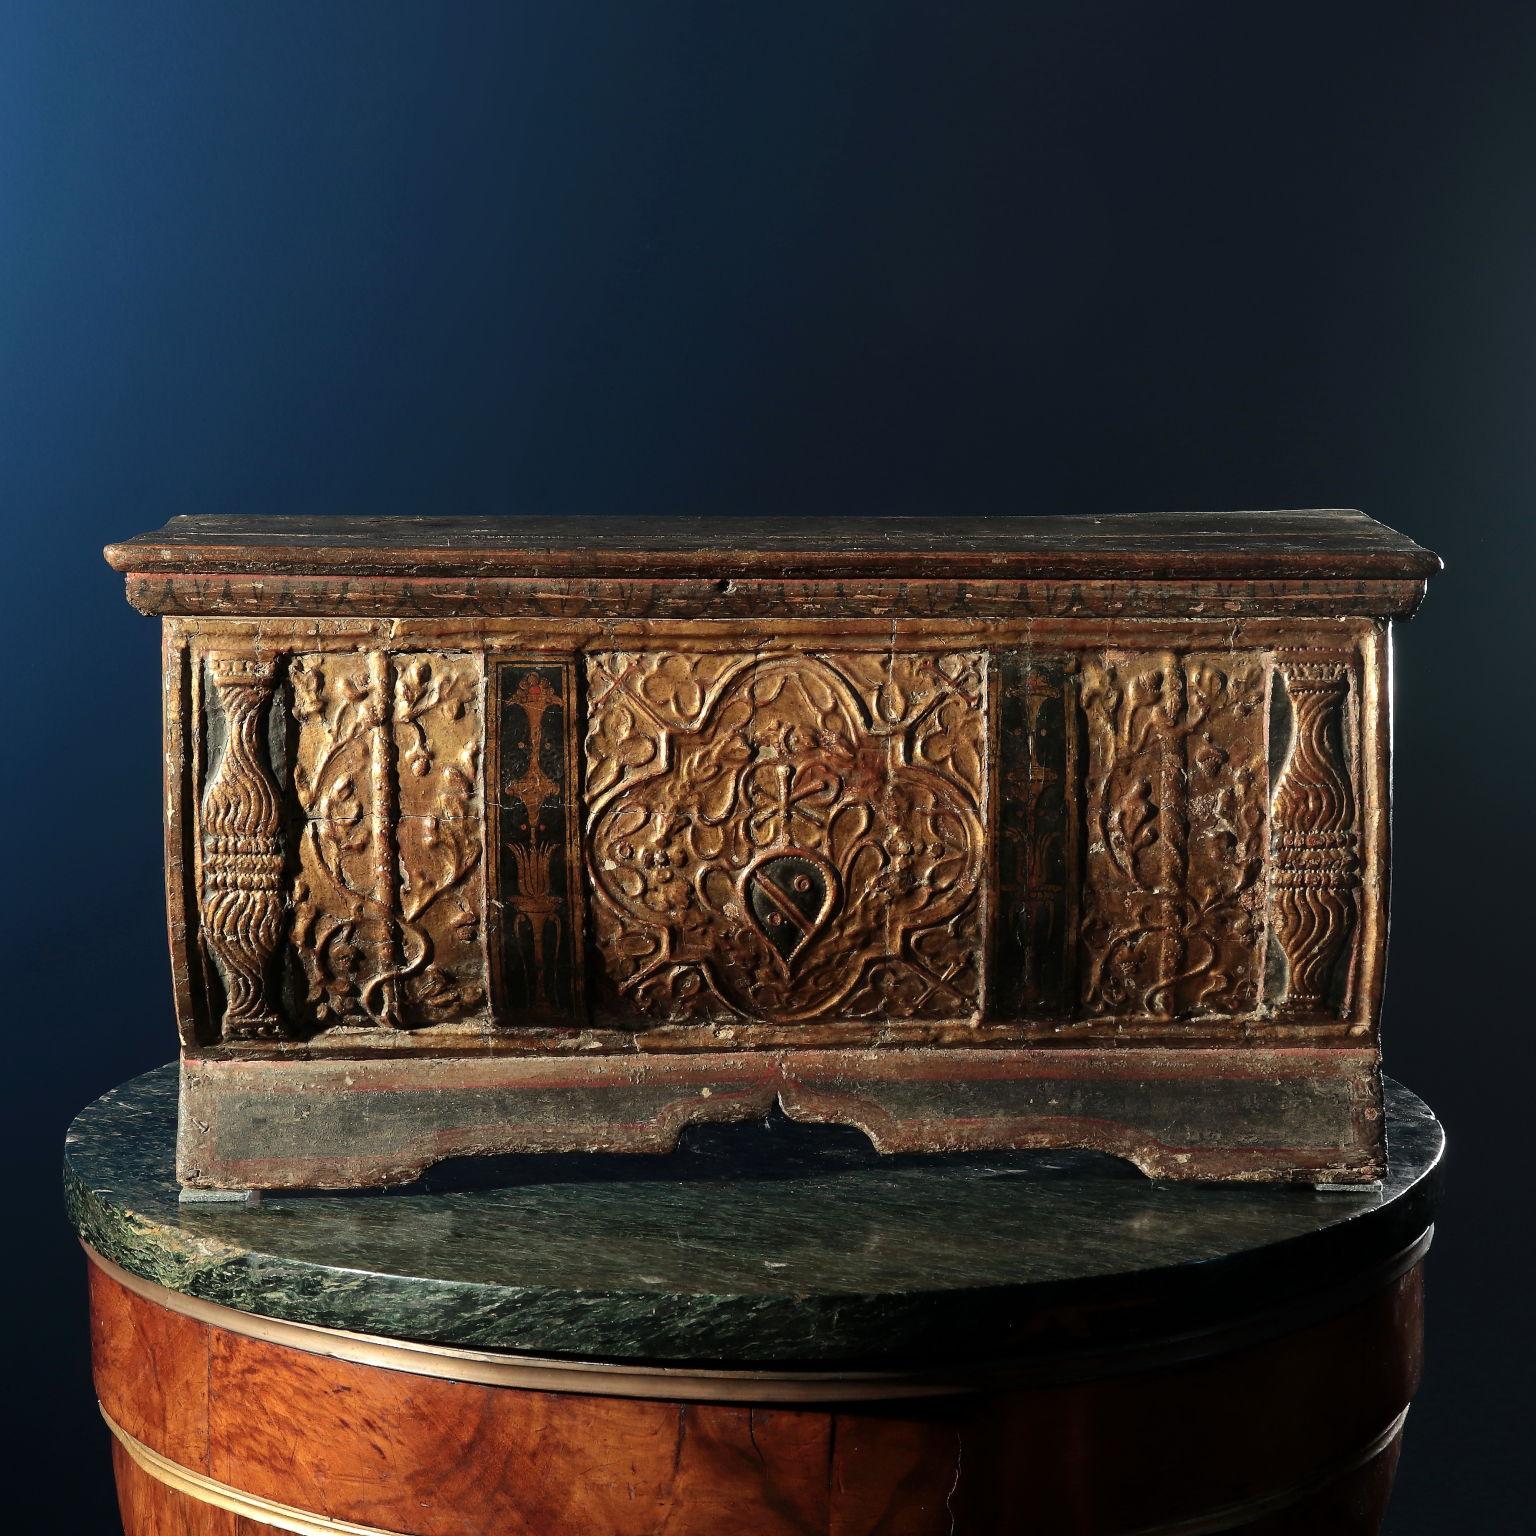 Petite boîte à couvercle ouvrant, façade en forme d'urne légèrement convexe avec support de tablette façonné, décorée sur le devant d'une tablette sculptée, tandis que le reste de l'objet est simplement peint. La façade a commencé avec quatre